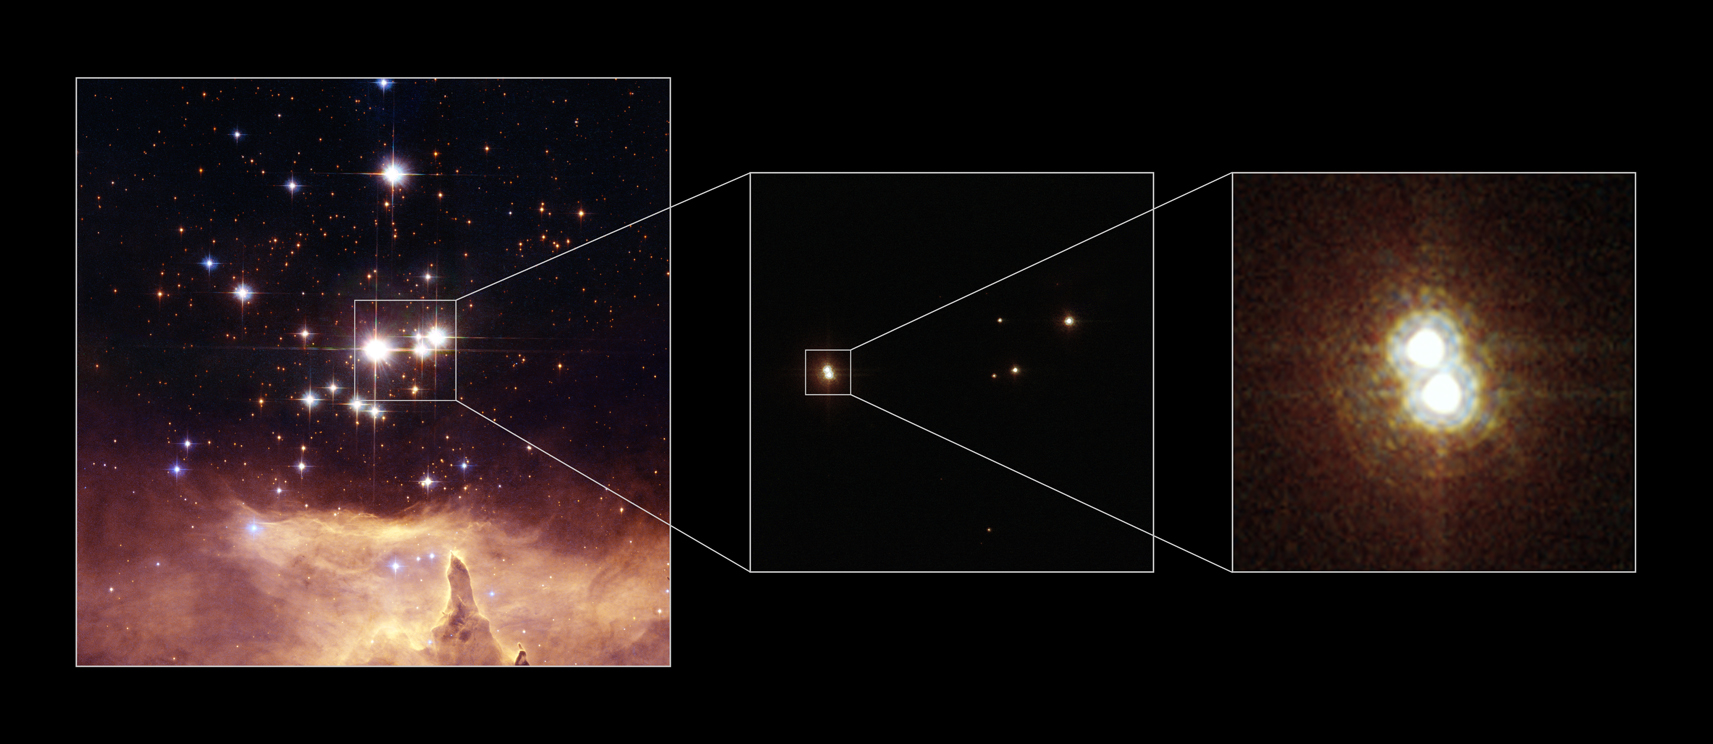 La estrella Pismis 24-1, un sistema múltiple de estrellas masivas. A principios de este siglo se estimó que su masa estaba entre 210 y 291 veces la del Sol. Observaciones más recientes muestran Pismis 24-1 como dos fuentes puntuales claramente separadas. Además, una de las dos fuentes puntuales es en realidad un sistema de dos estrellas, elevando el número total a tres. Las masas (una vez resuelto el sistema en tres componentes) resultan ser de ~96, ~64 y ~64 masas solares, valores elevados pero muy inferiores a la estimación anterior. Fuente: NASA, ESA y Jesús Maíz (IAA).